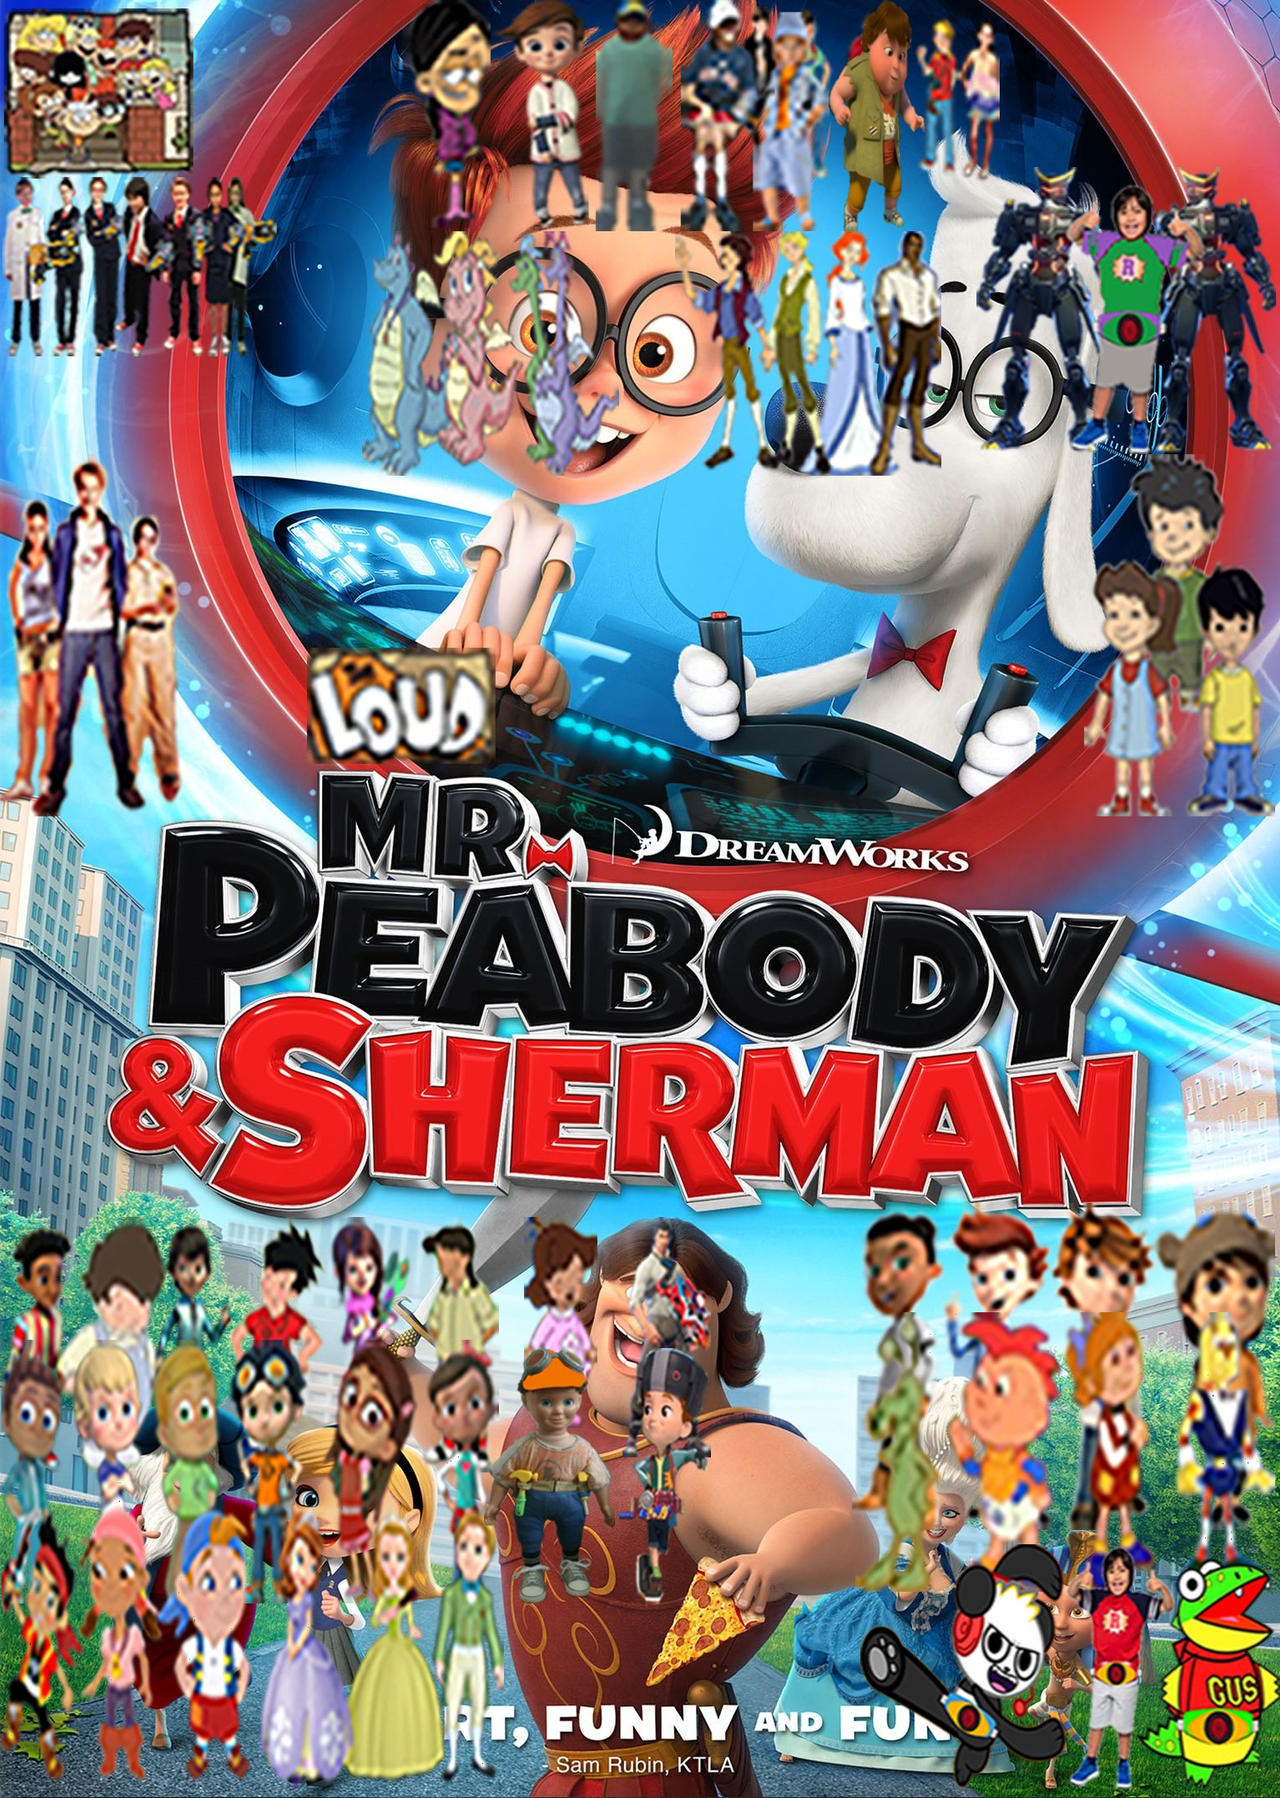 PEABODY & SHERMAN – Ten30 Studios